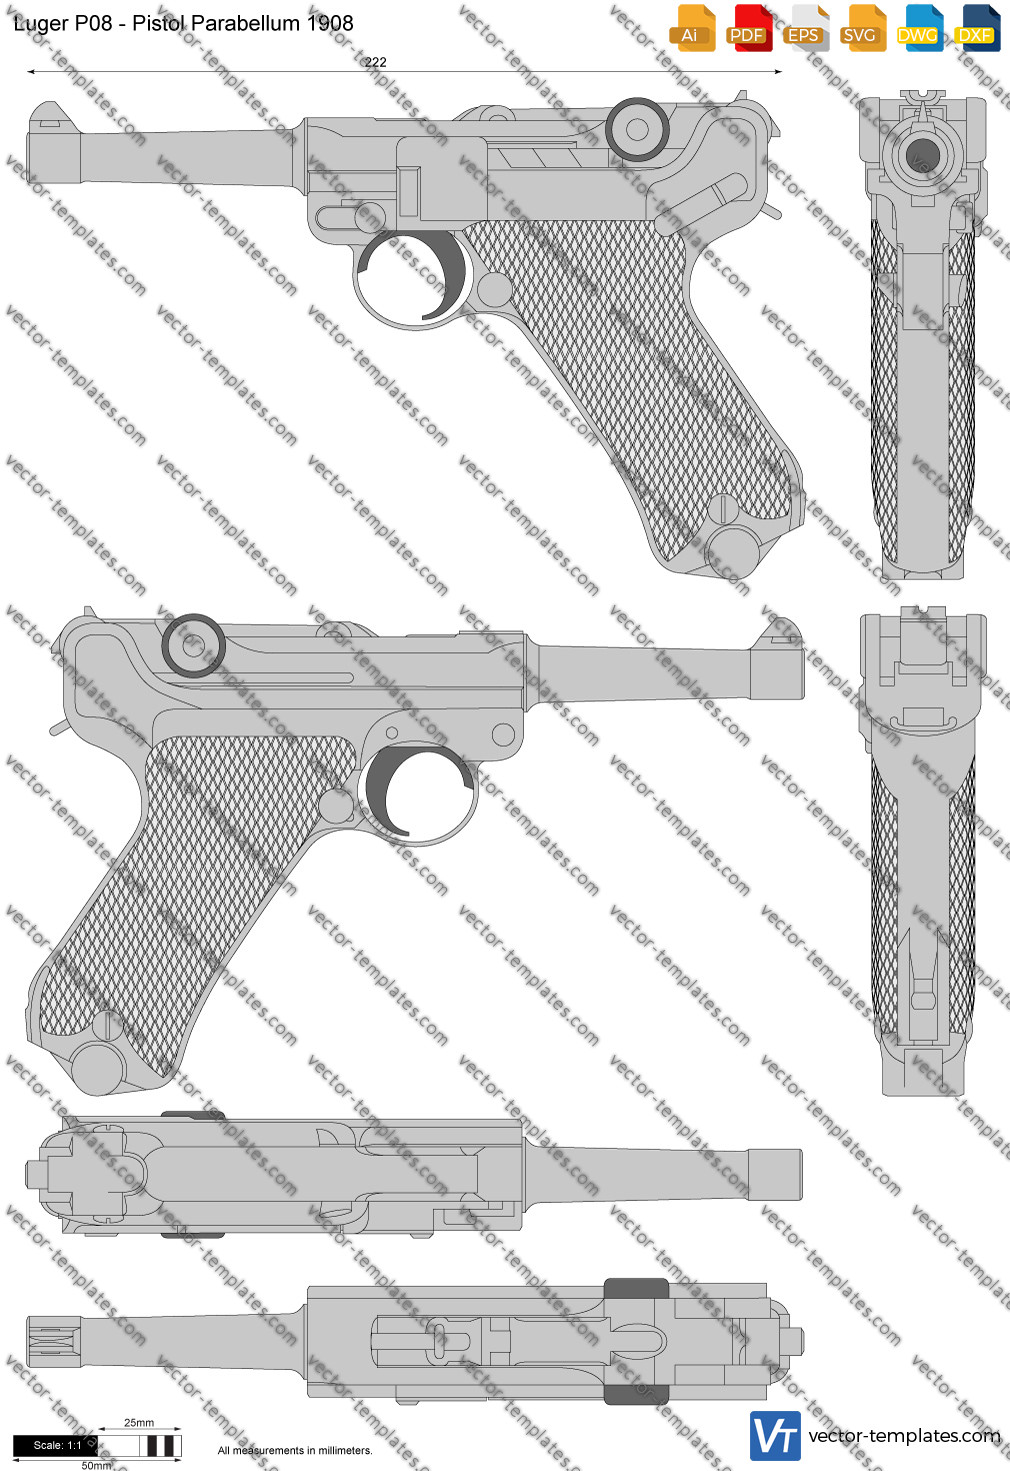 Templates - Weapons - Pistols - Luger P08 - Pistol Parabellum 1908